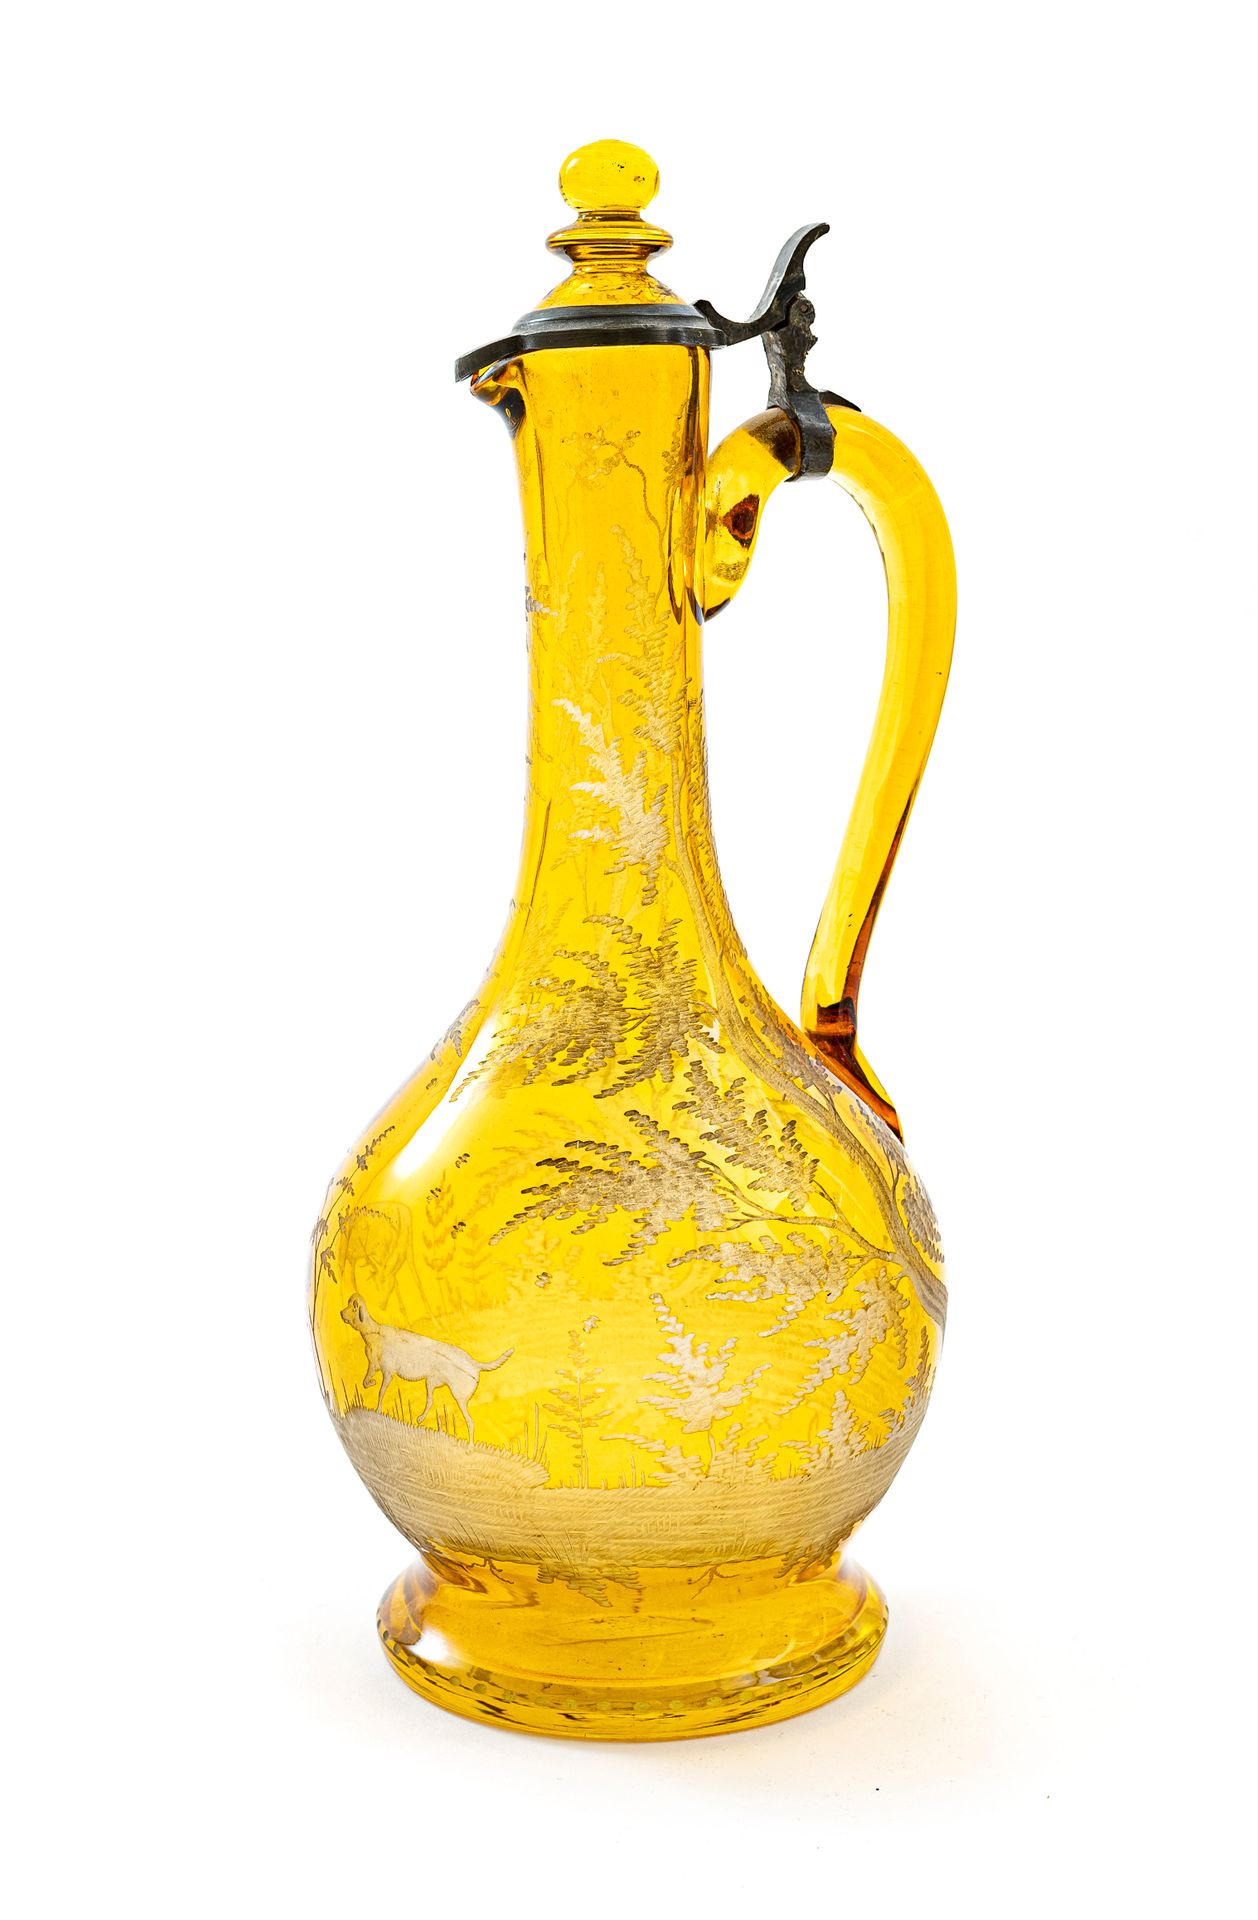 Null Krug mit bauchigem Körper aus böhmischem Kristall in Gelbtönen mit in einem&hellip;